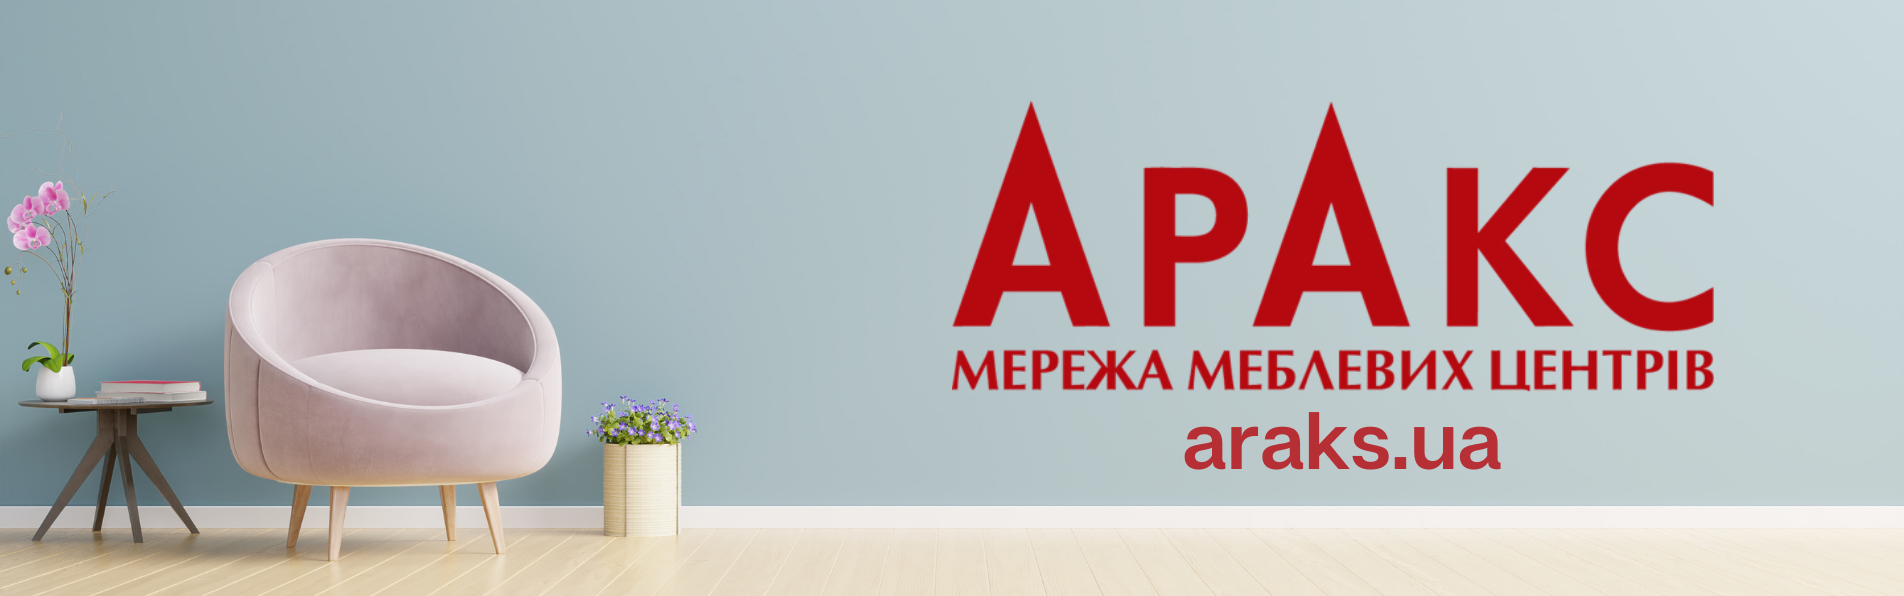 Araks.ua – допомога дизайнеру